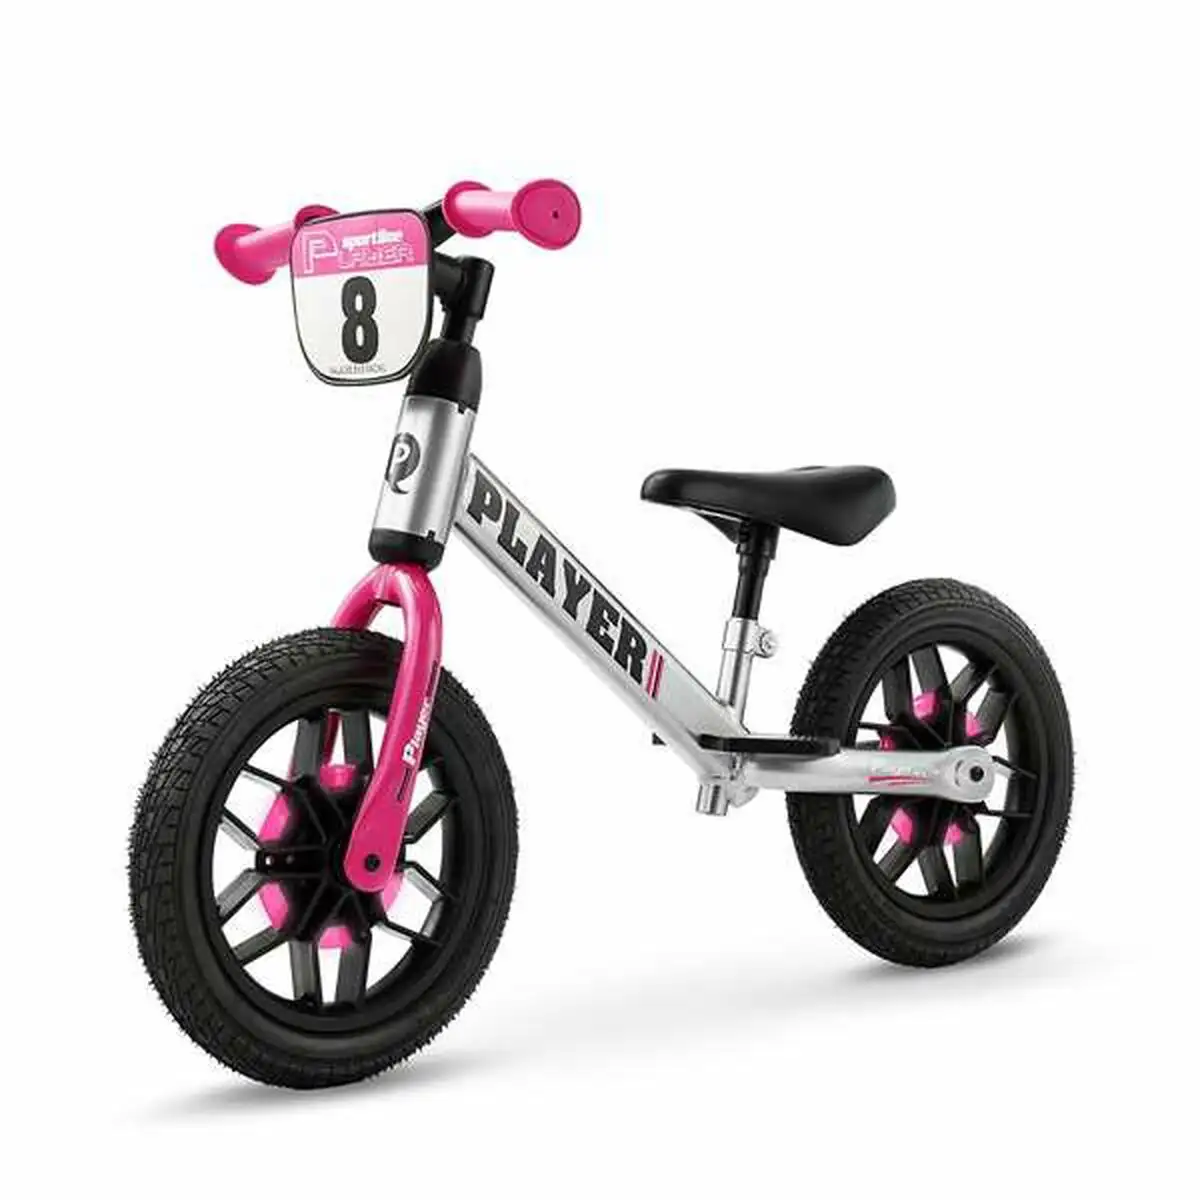 Velo pour enfants new bike player lumieres rose 10 _8238. DIAYTAR SENEGAL - Votre Portail Vers l'Exclusivité. Explorez notre boutique en ligne pour découvrir des produits uniques et raffinés, conçus pour ceux qui recherchent l'excellence.